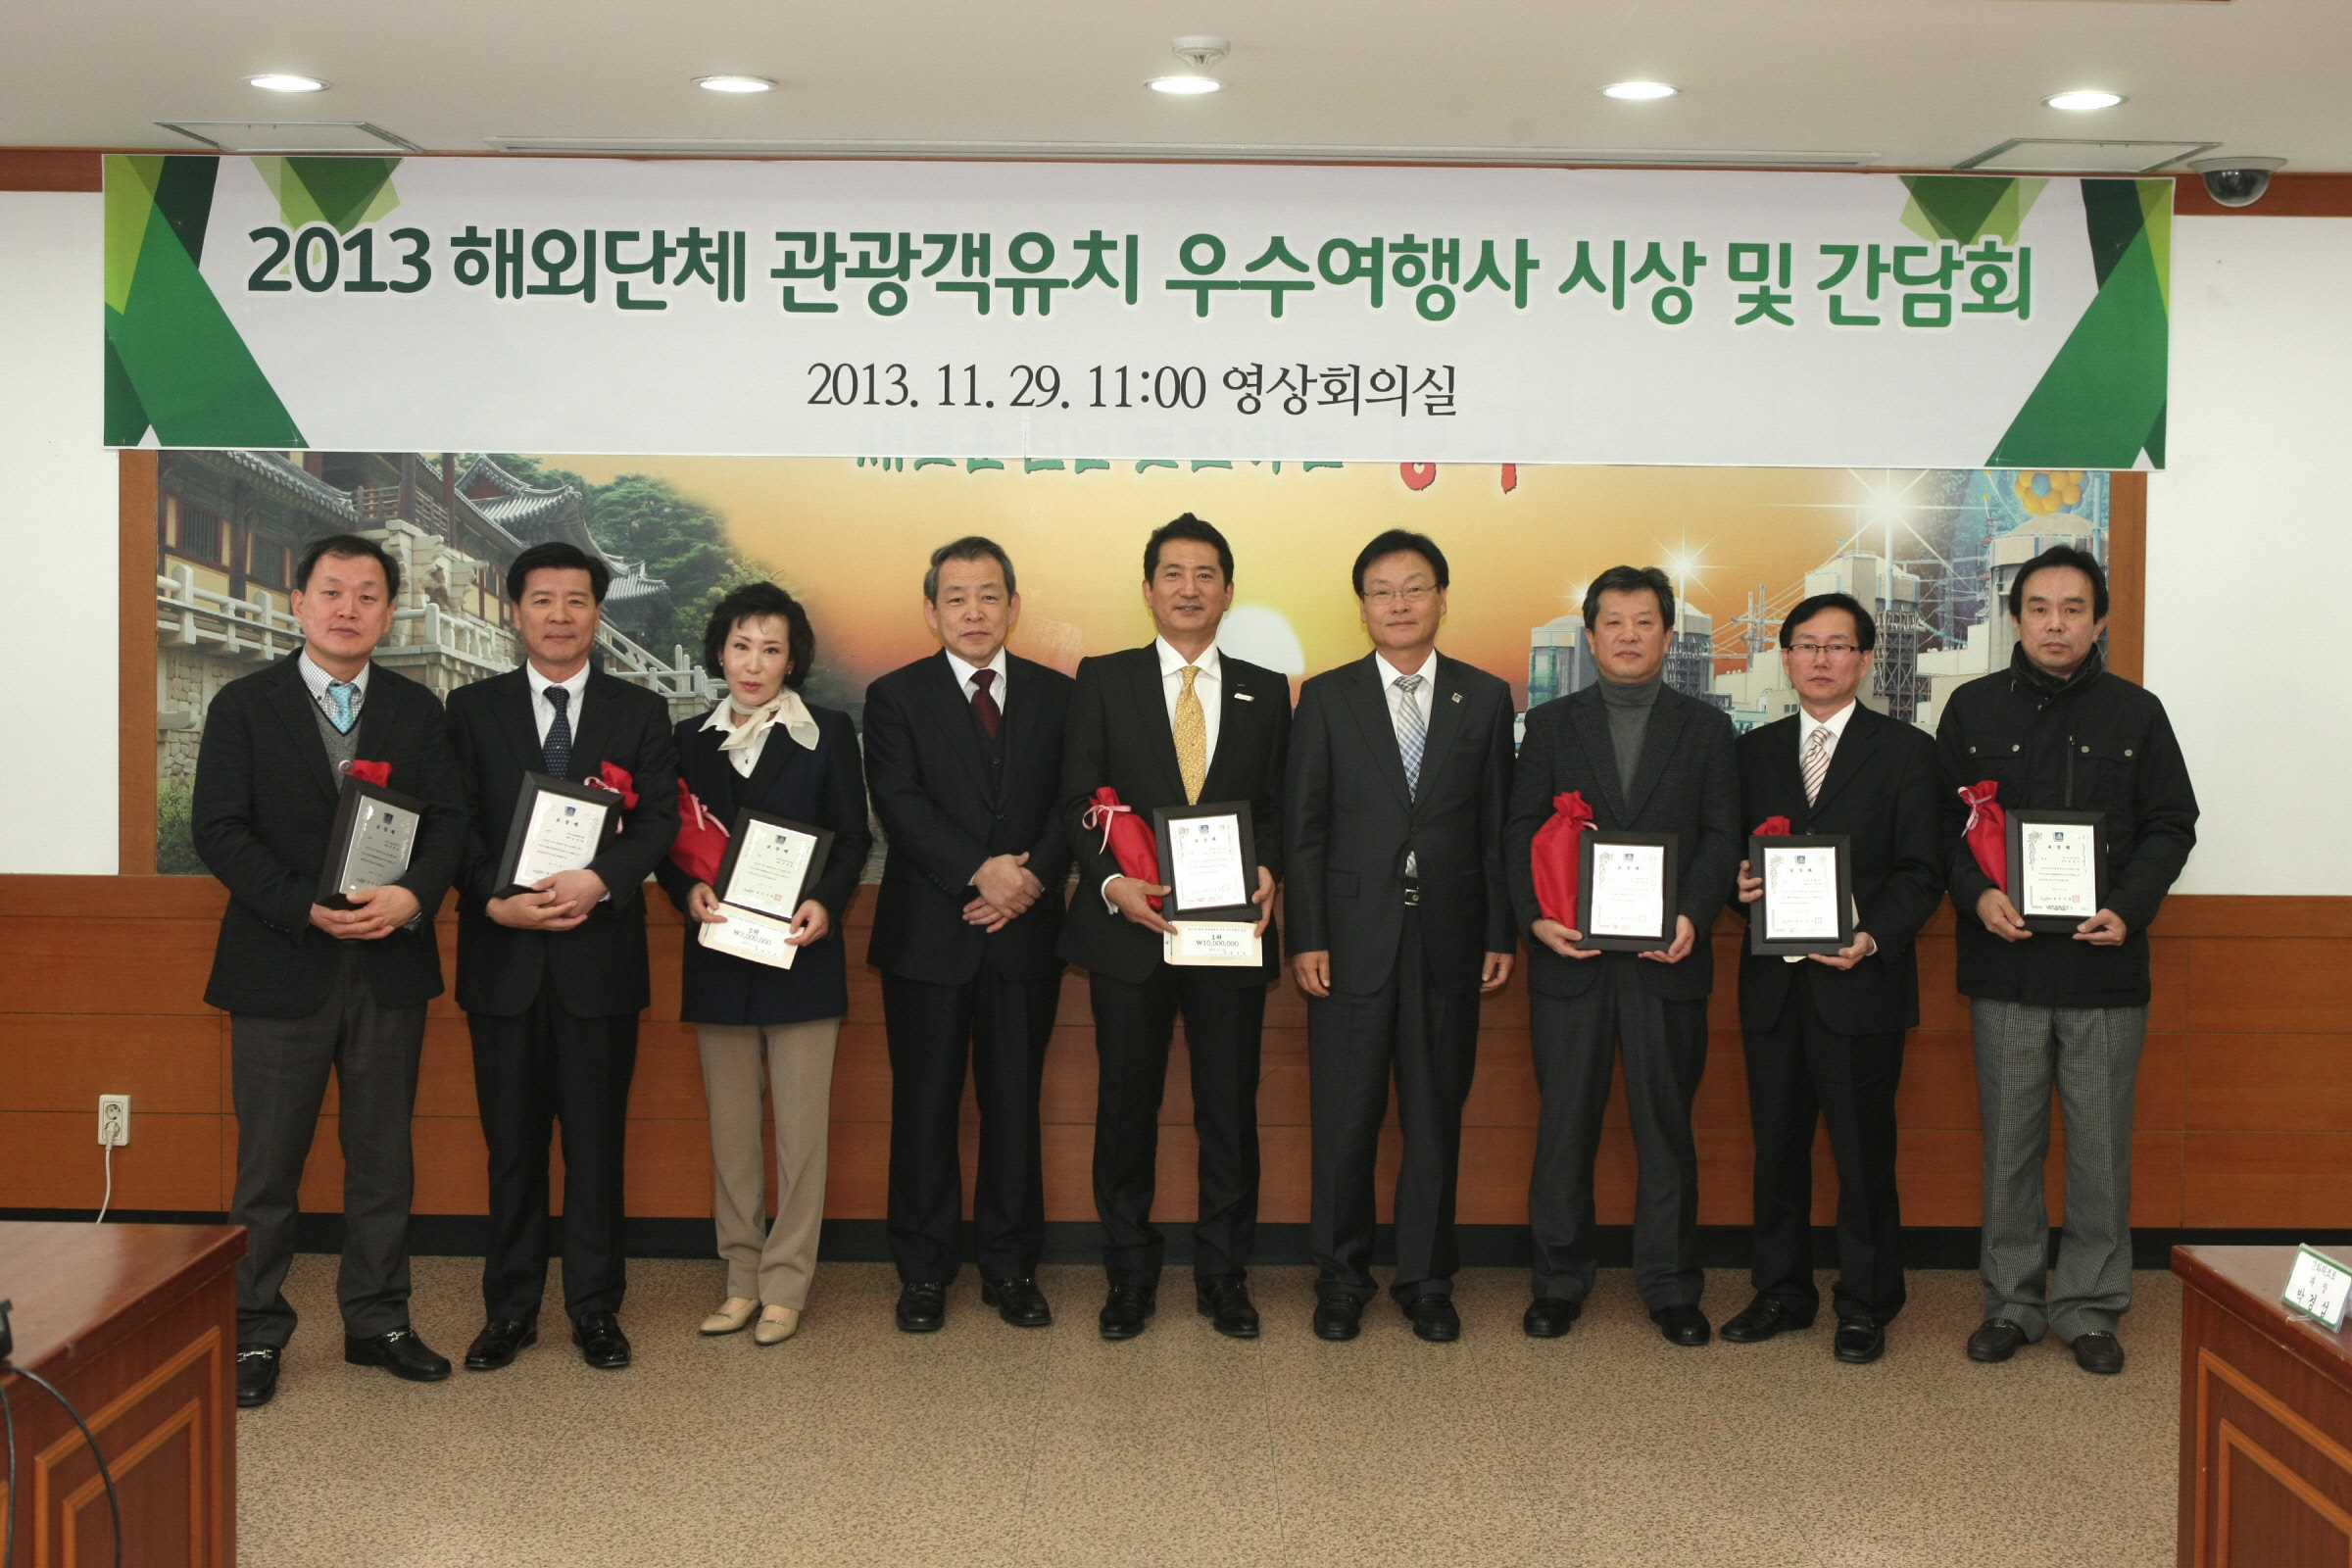 2013년 해외 단체관광객 유치 우수 여행사 시상 및 간담회 개최